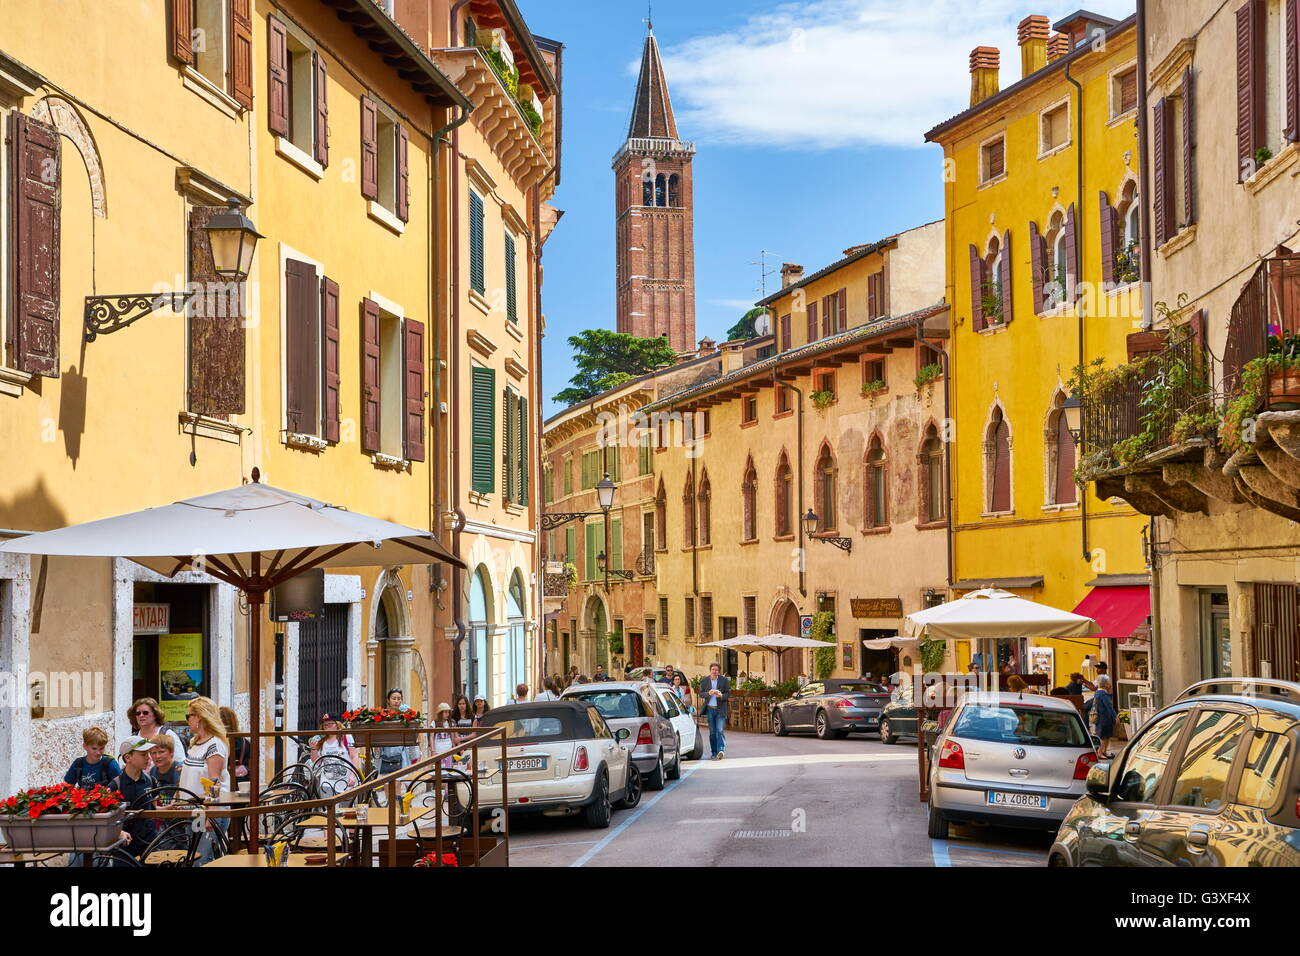 Verona old town street, Veneto region, Italy Stock Photo